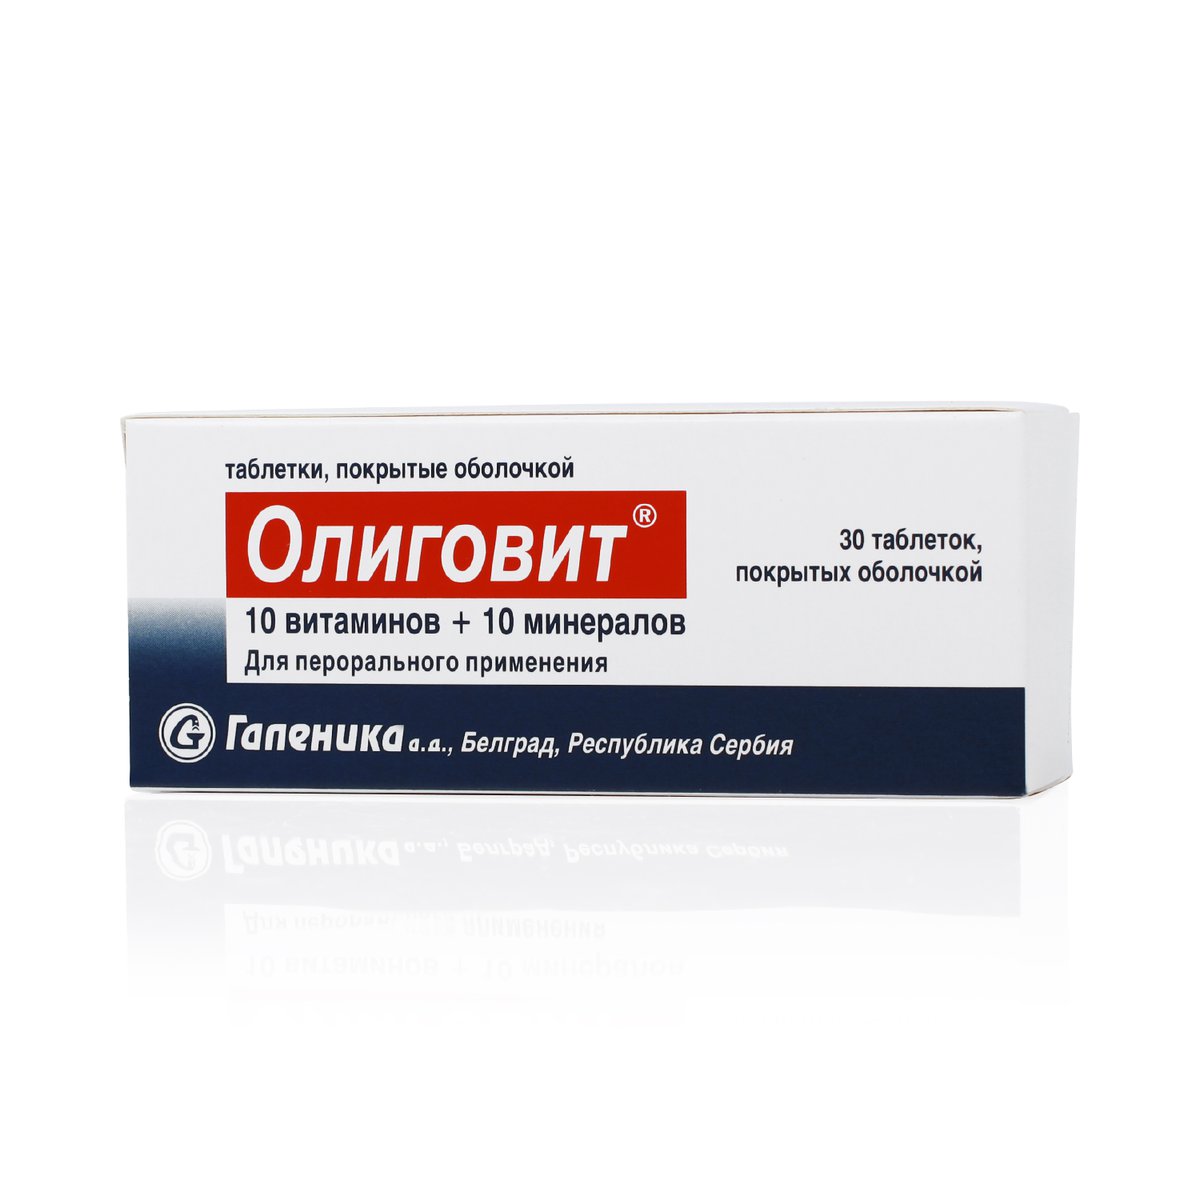 Олиговит (таблетки, 30 шт) - цена,  онлайн , описание .